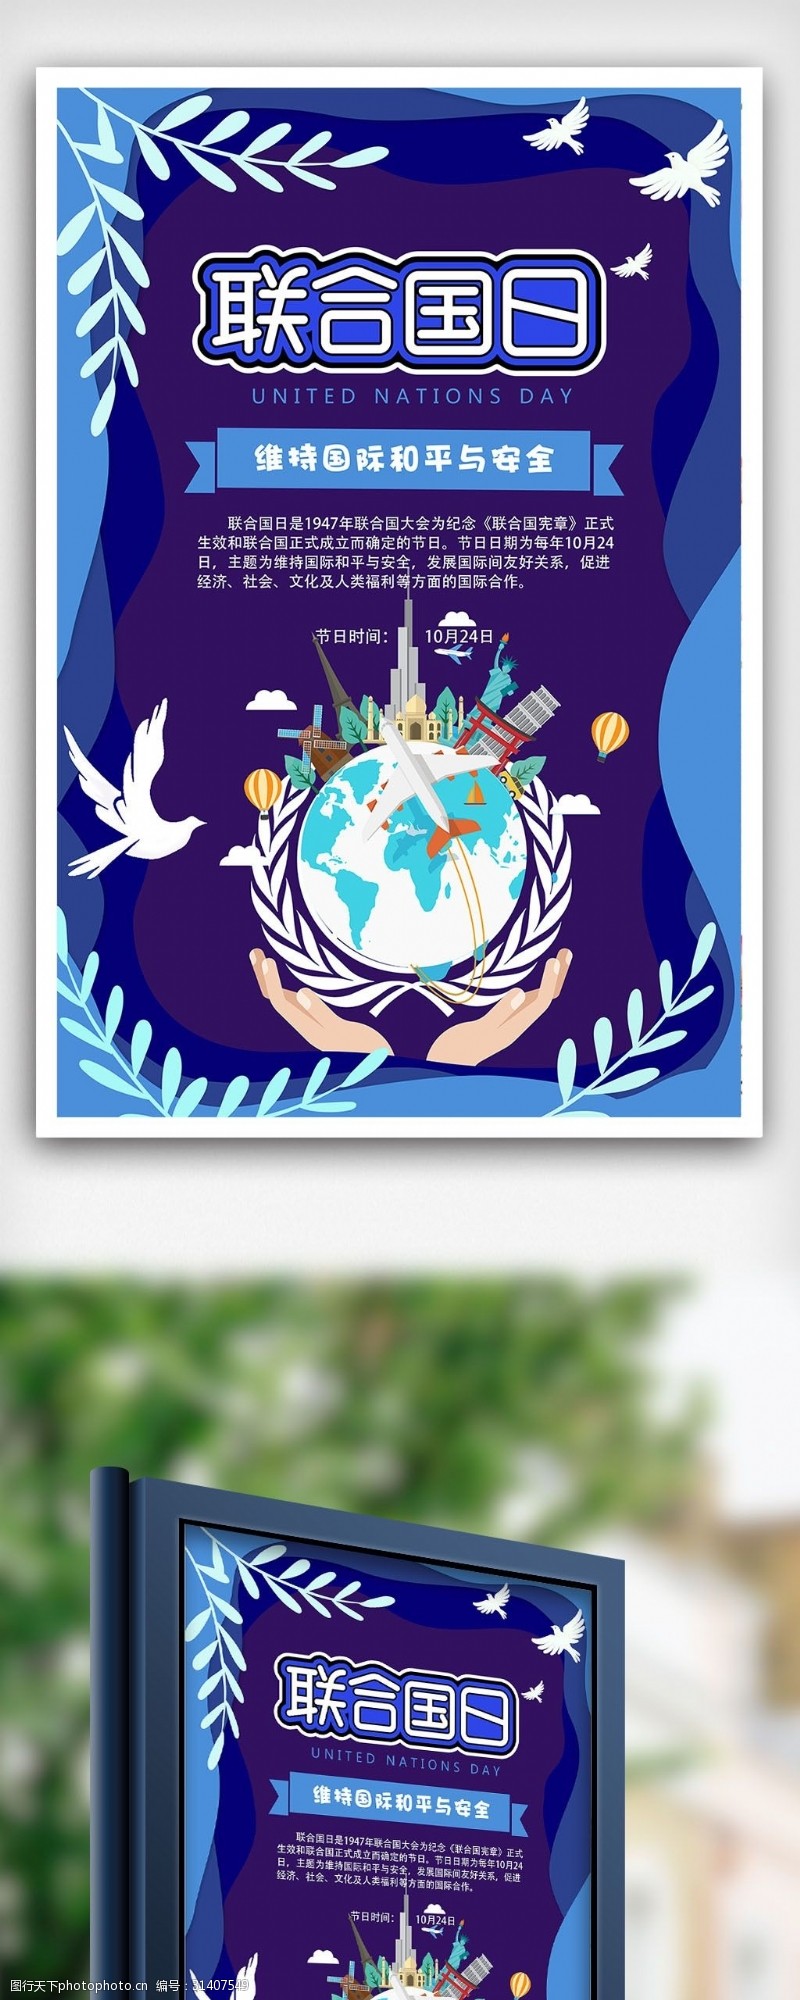 2018层叠世界和平联合国日